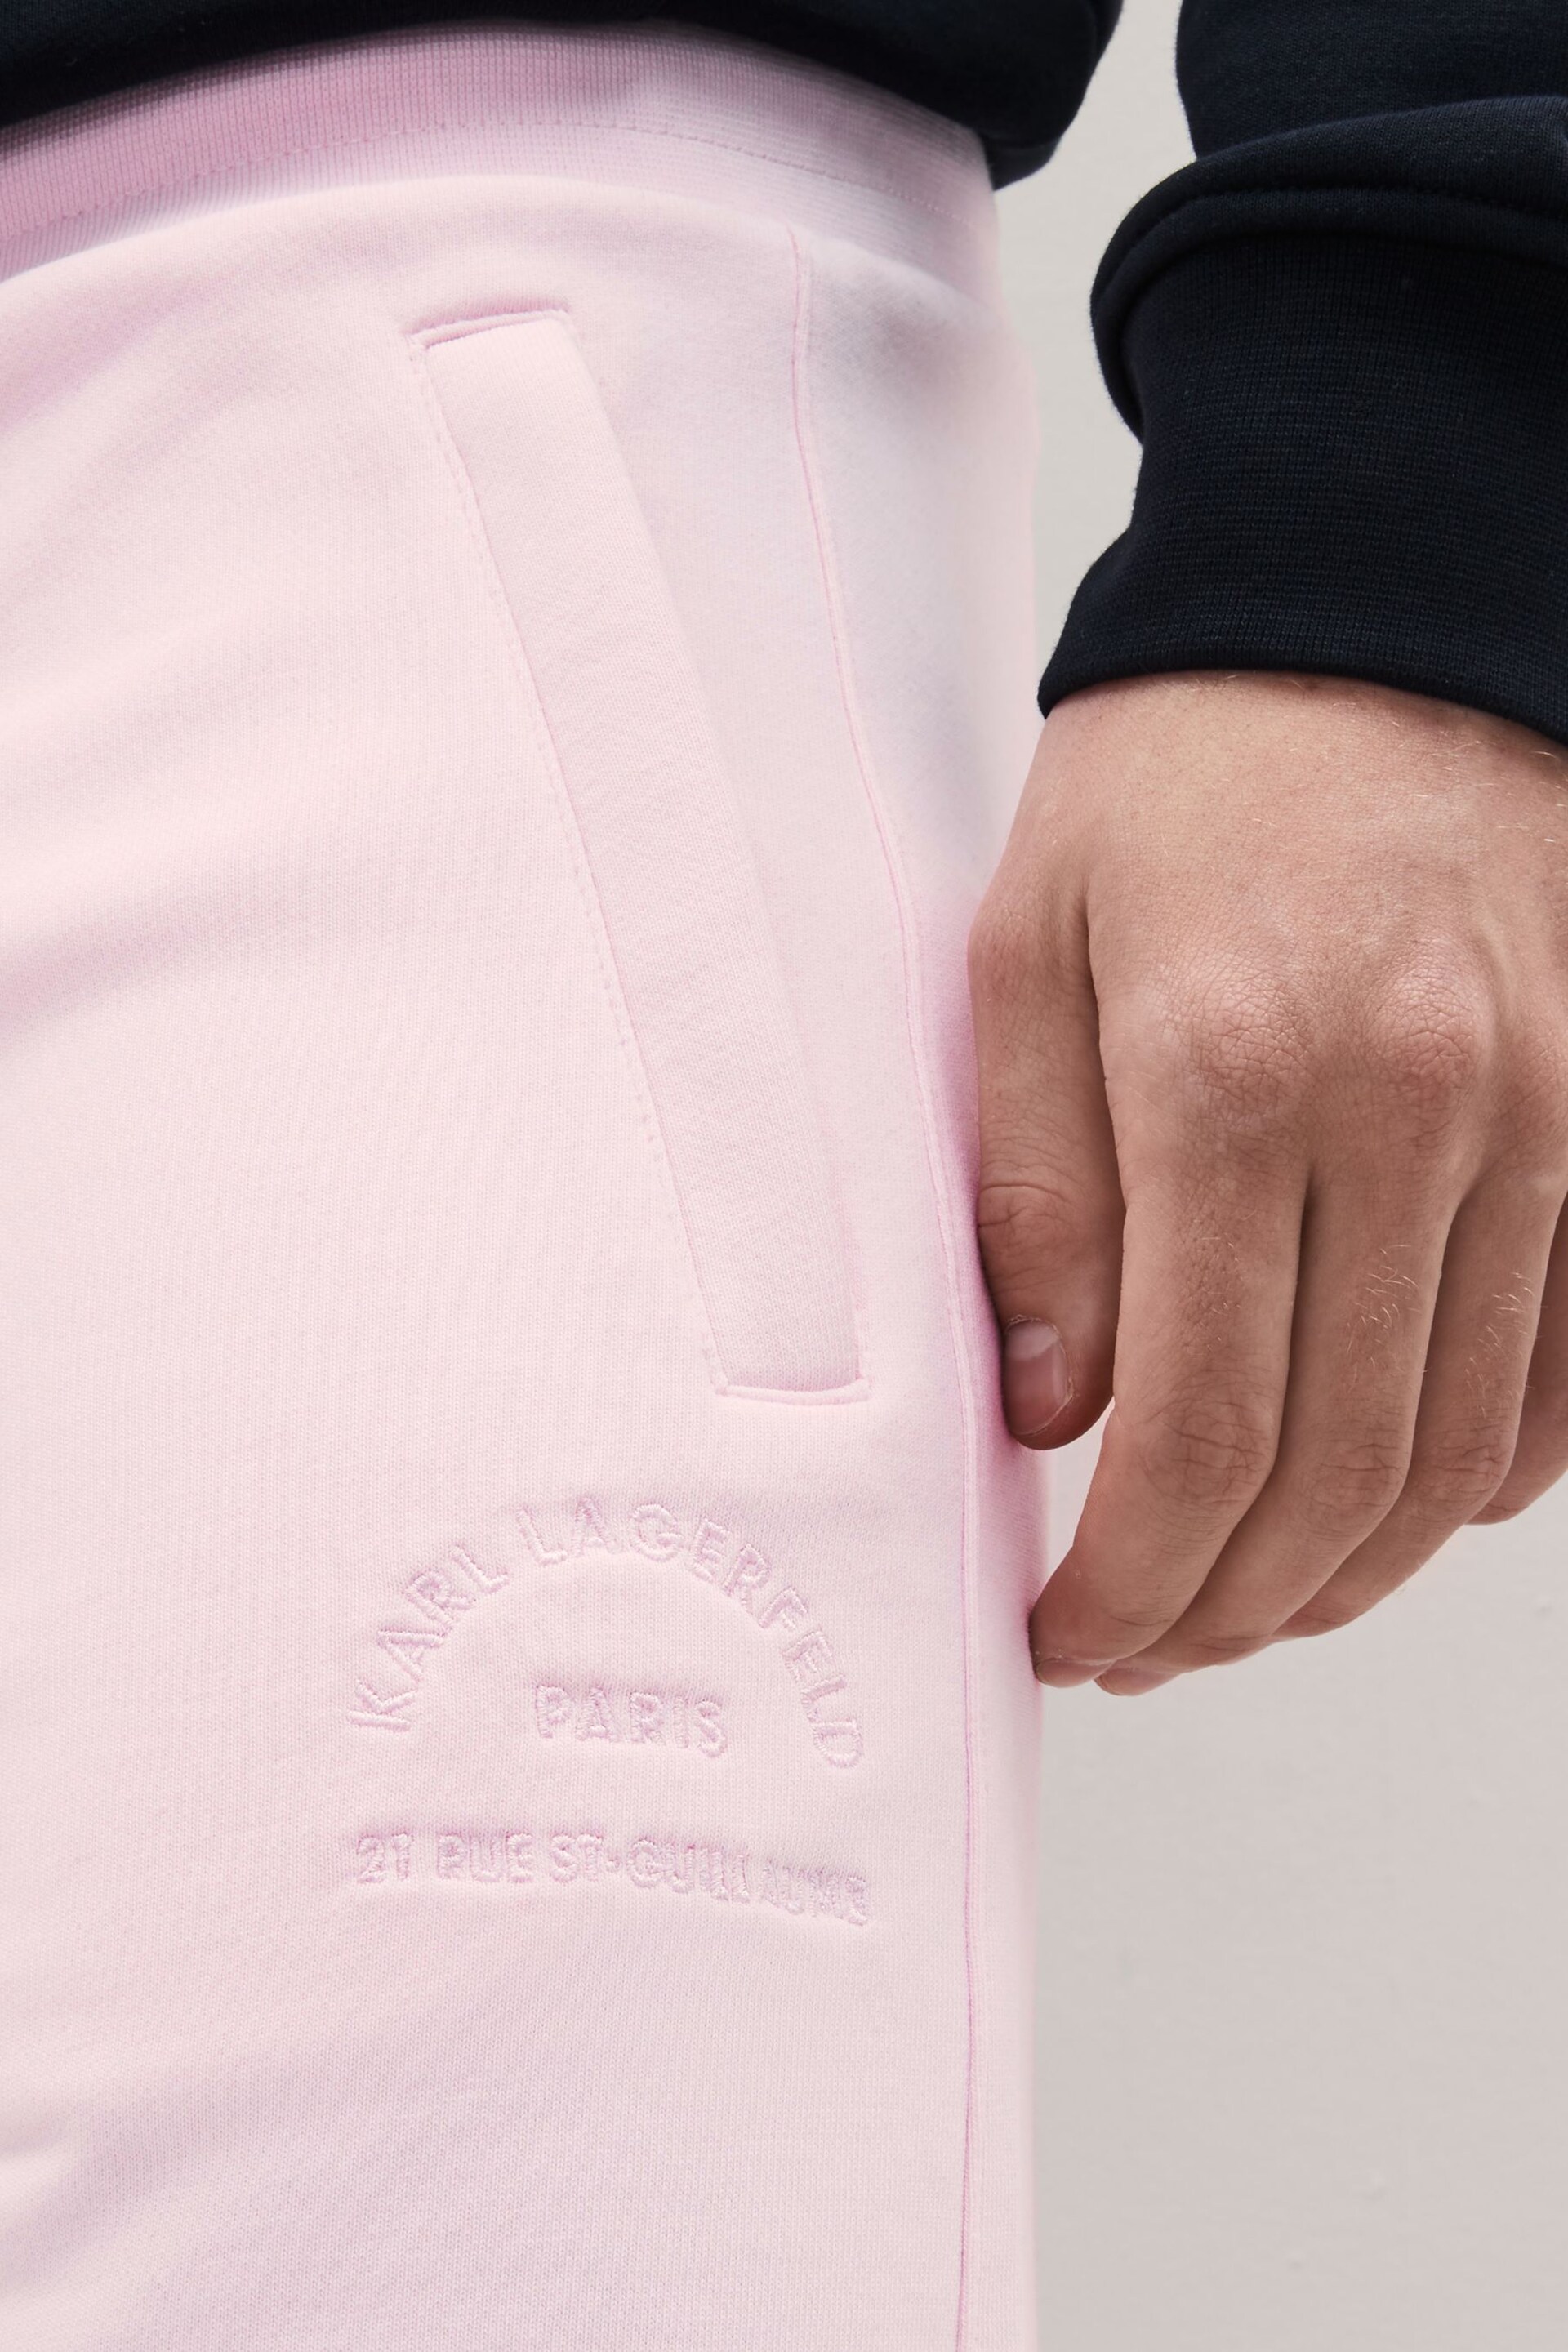 Karl Lagerfeld Pink Drawstring Shorts - Image 3 of 6